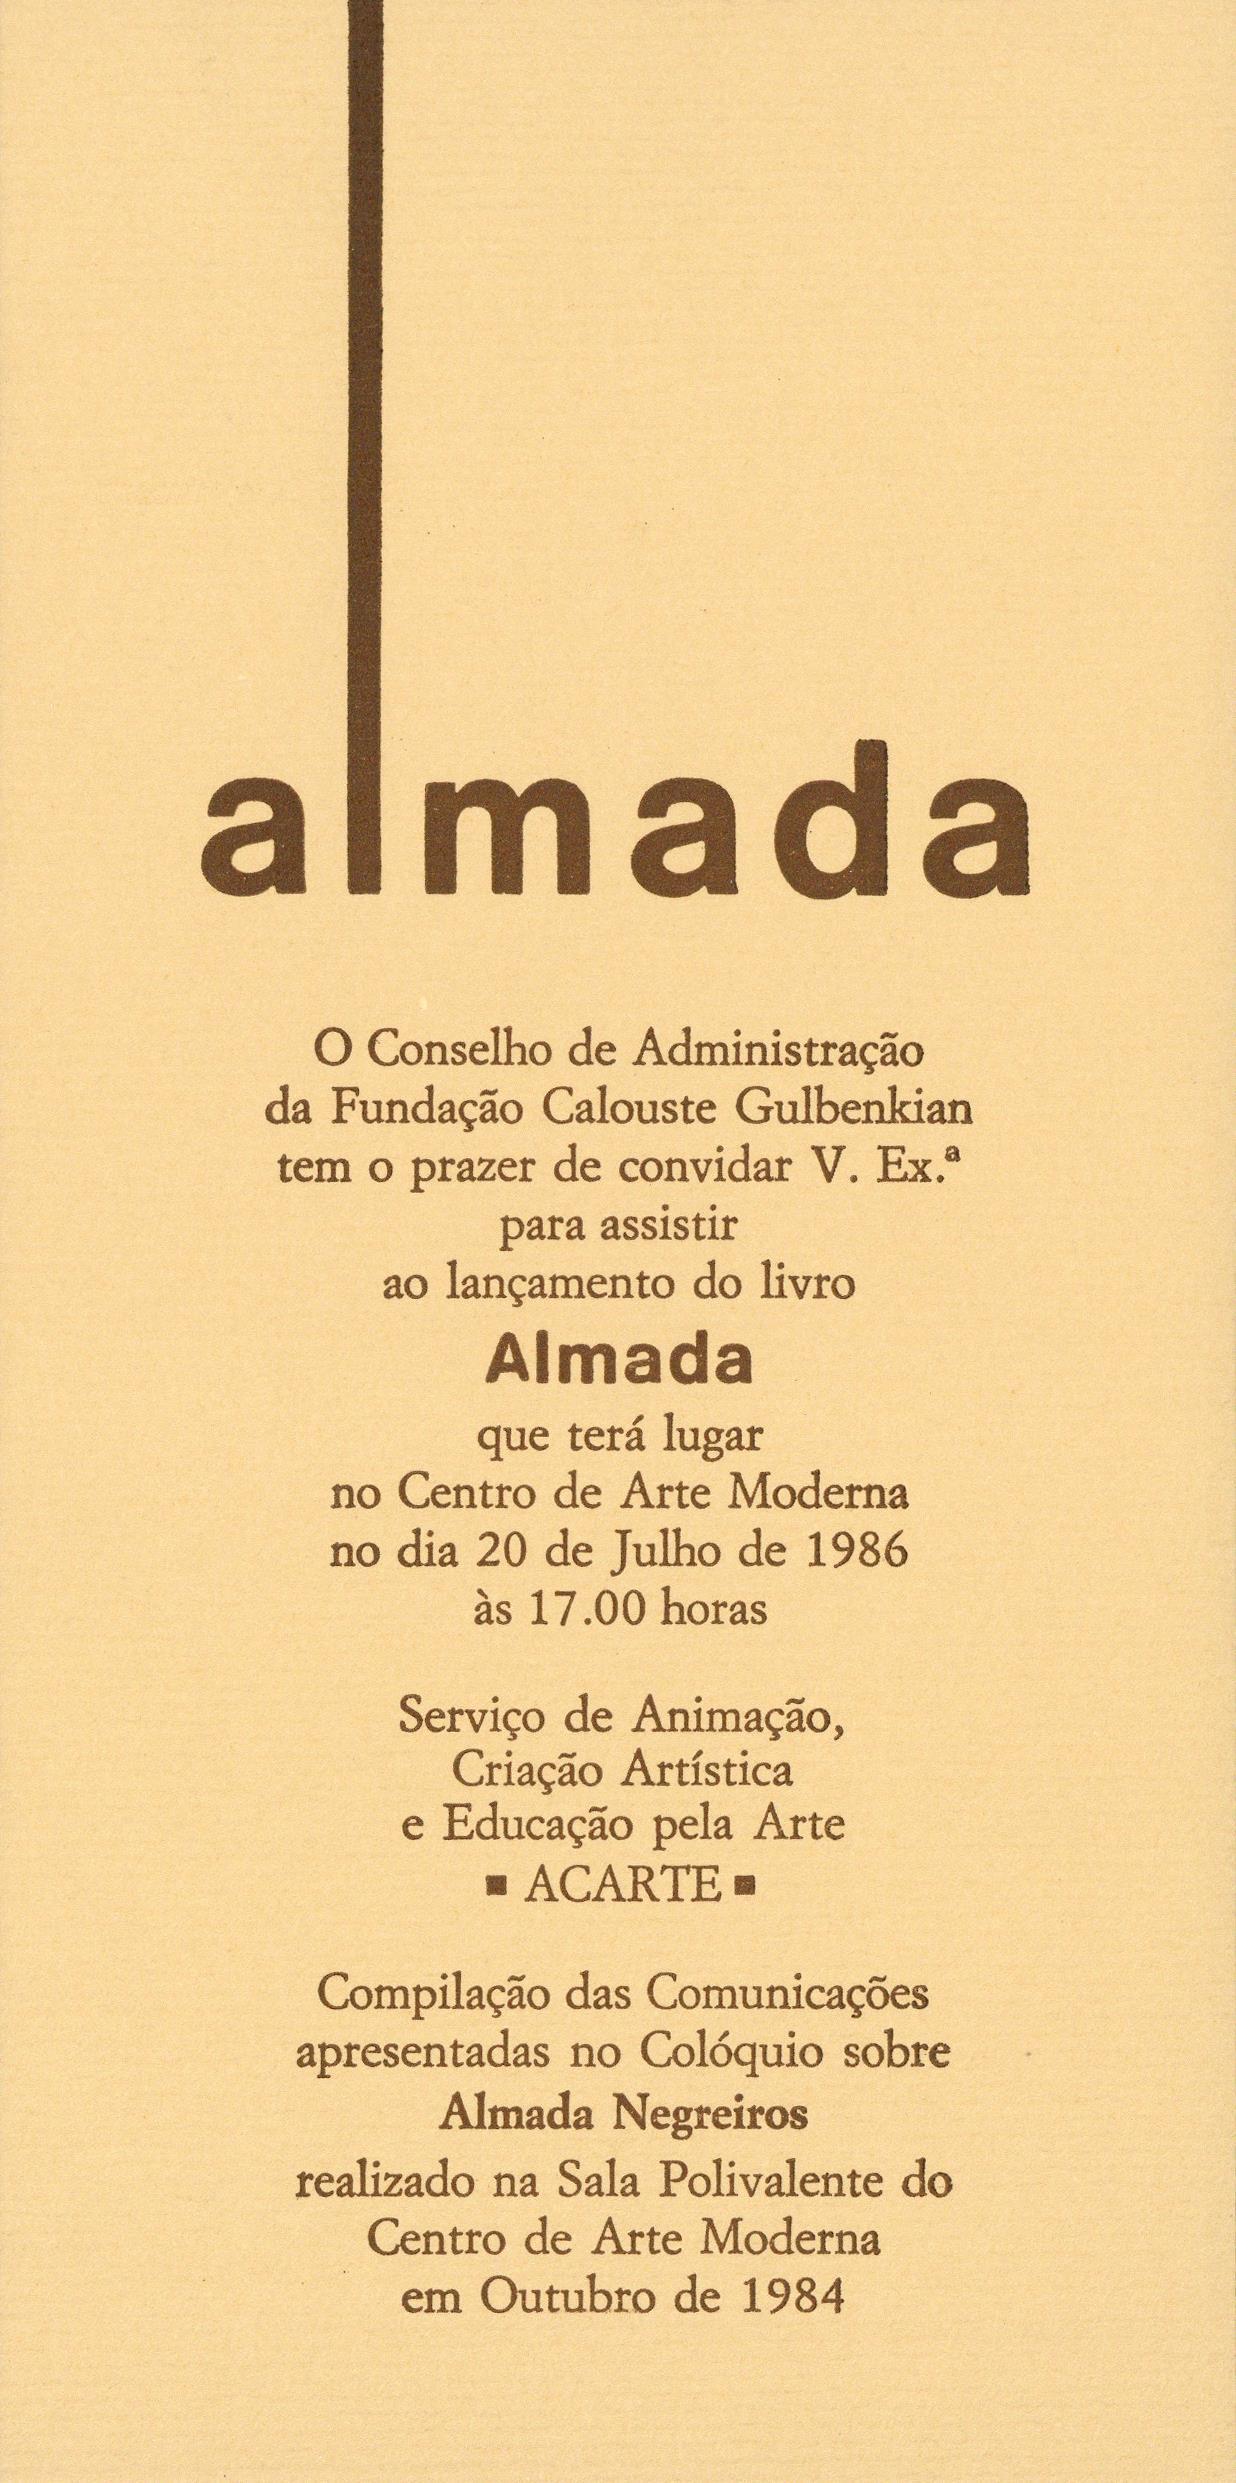 Dossier_convites_Arquivo2_1986_Almada_1.2